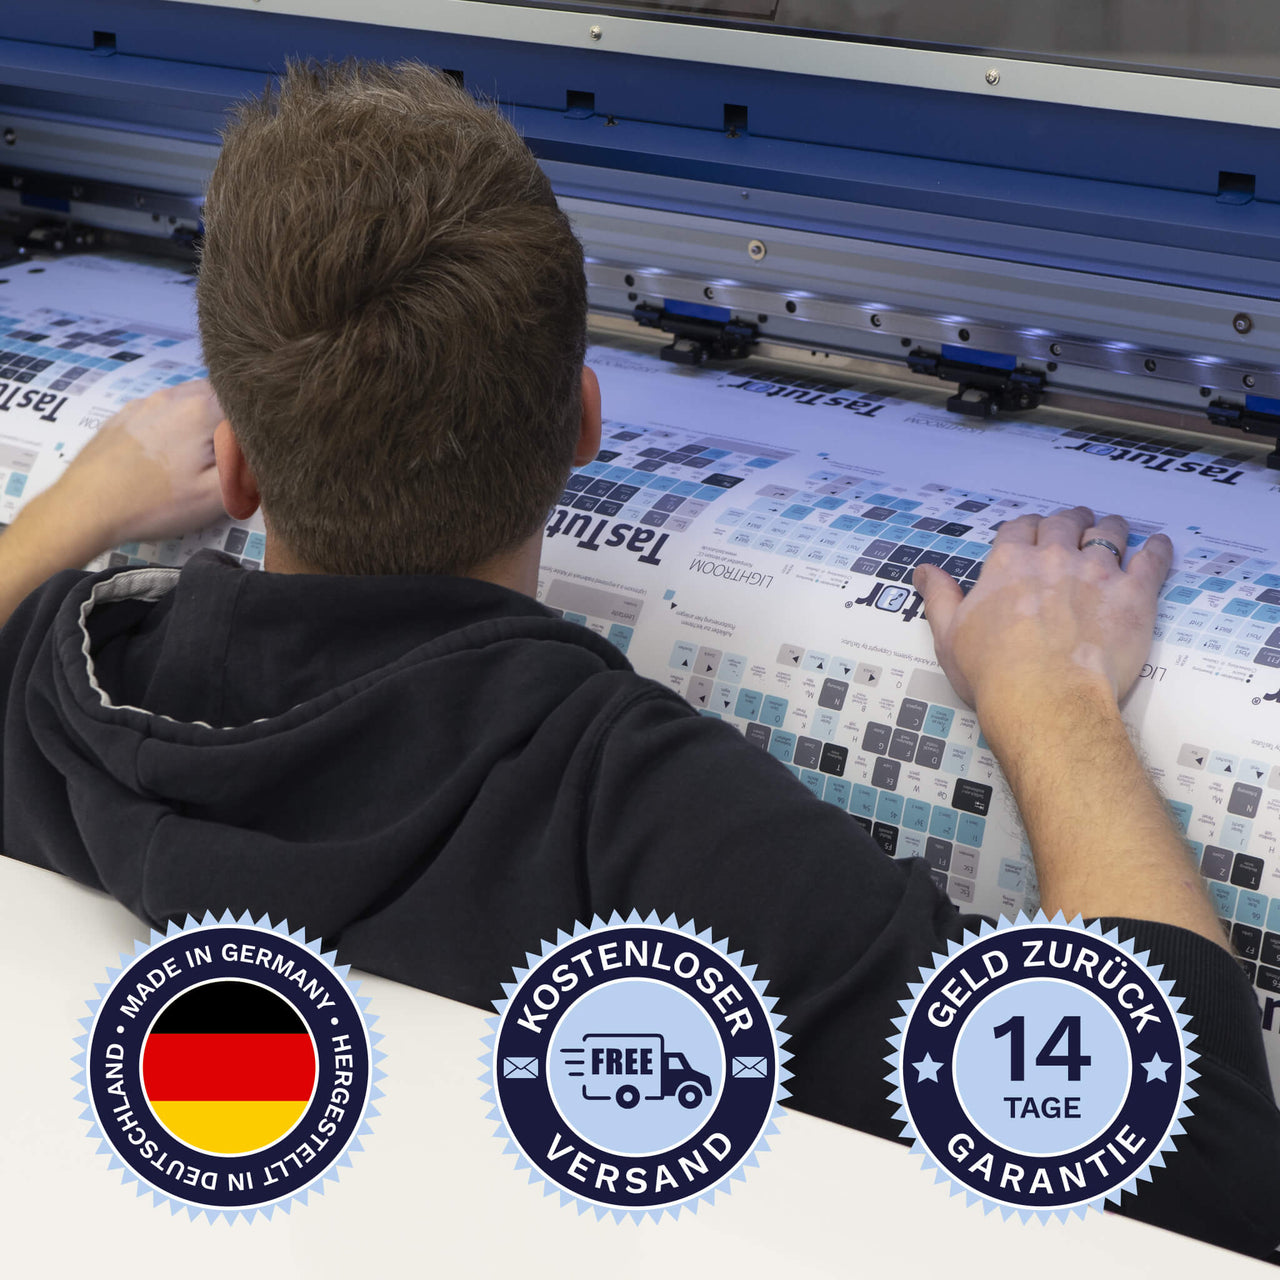 Premiere Tastaturaufkleber werden in Deutschland hergestellt. Der Versand ist kostenlos und wir gewährleisten 14 Tage Geld zurück Garantie.